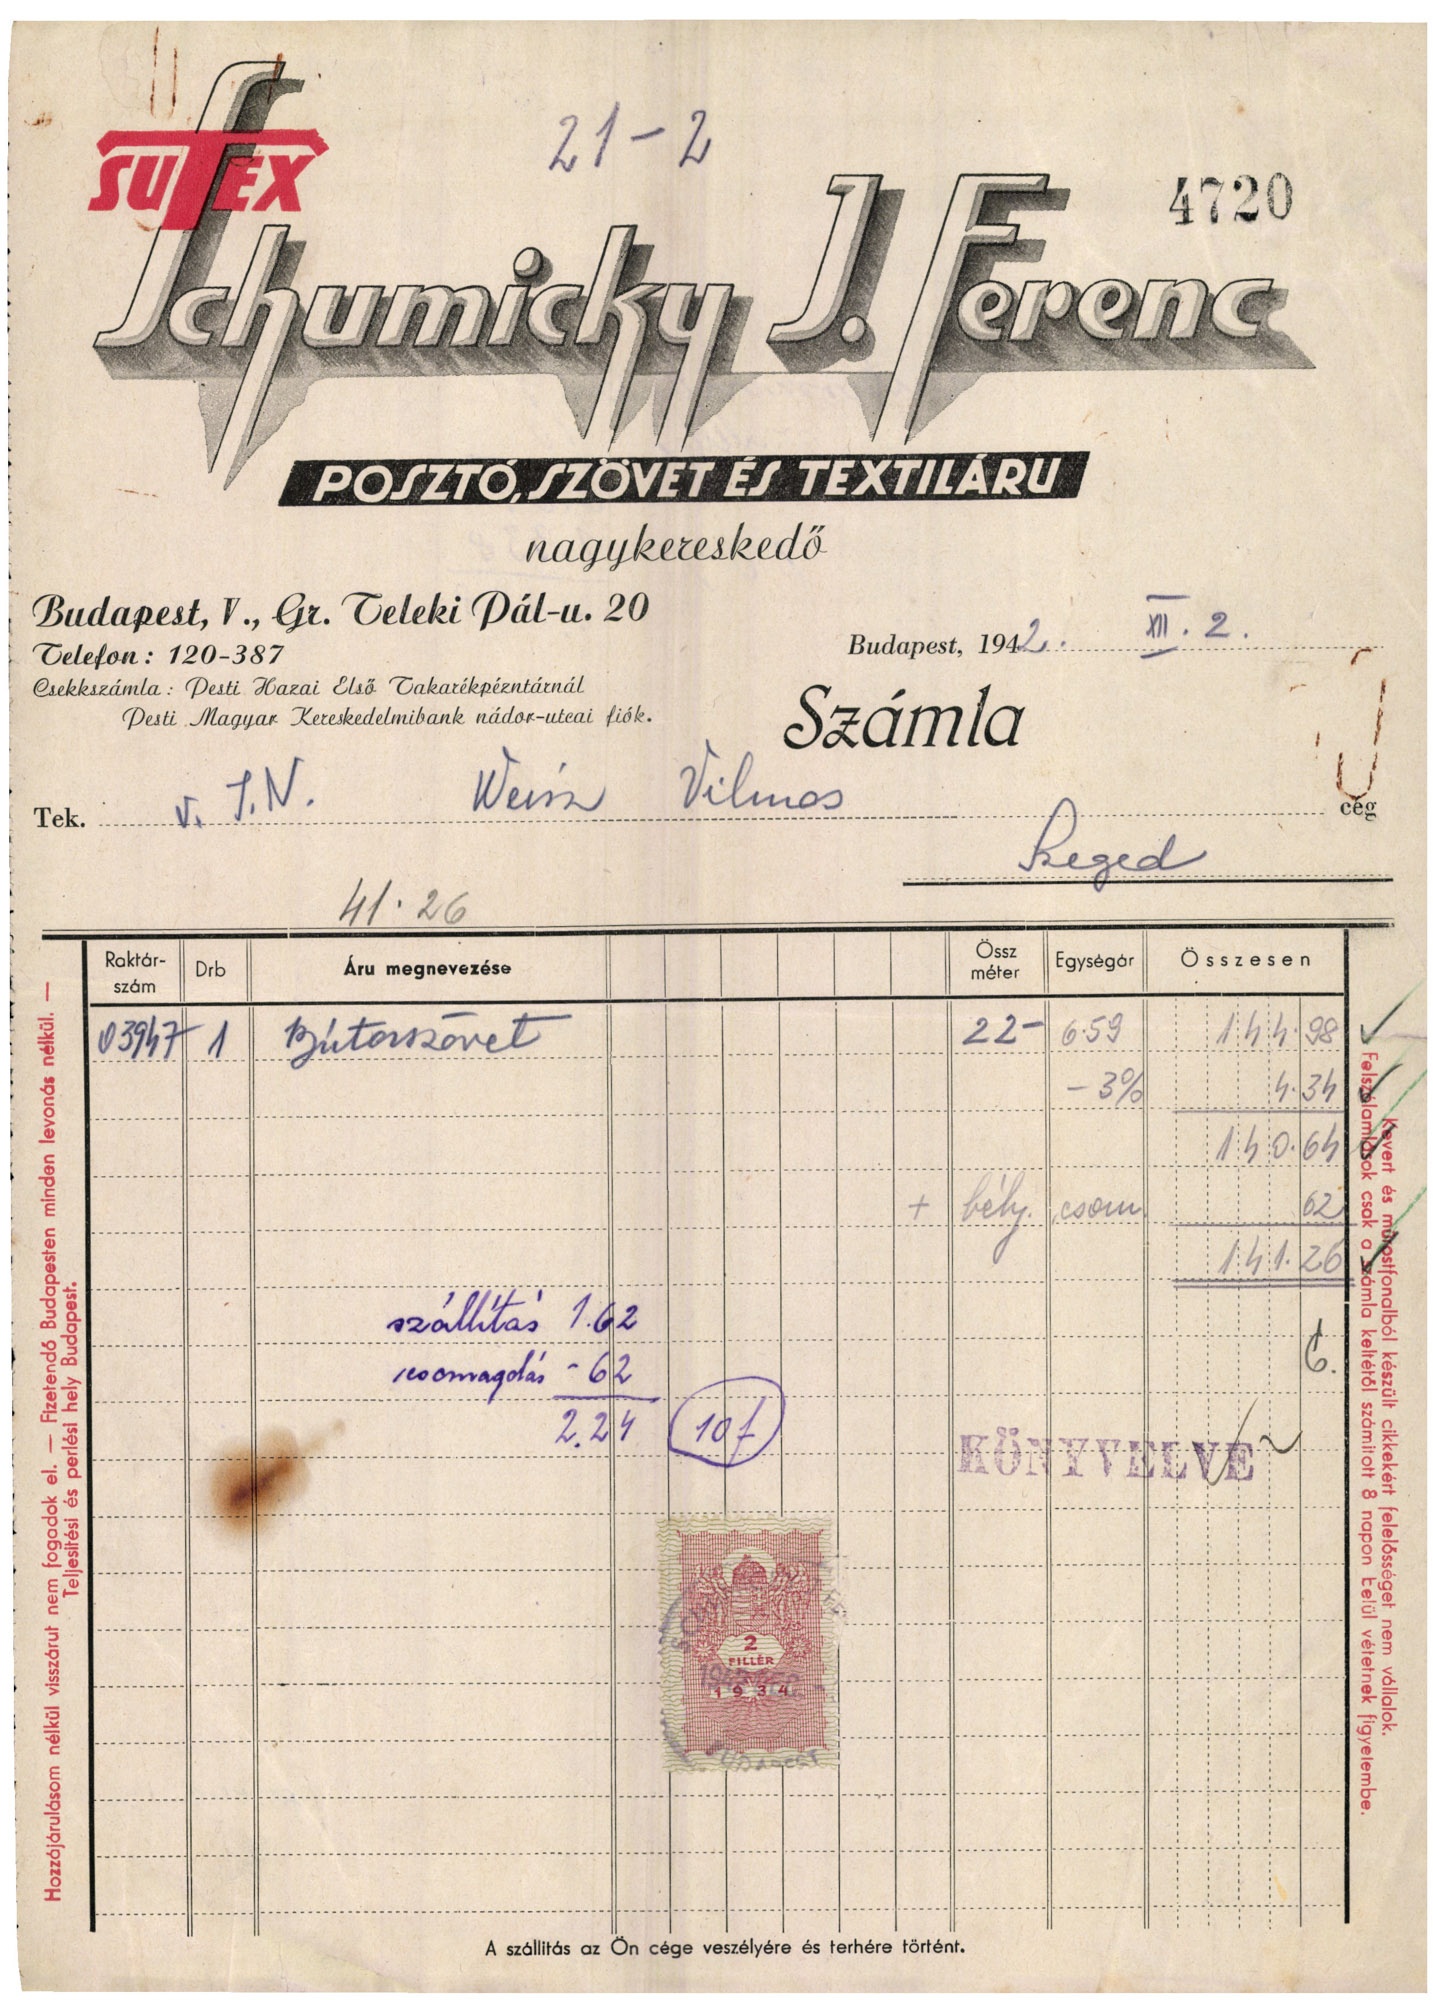 SUTEX Schumichky J. Ferenc posztó, szövet és textiláru nagykereskedő (Magyar Kereskedelmi és Vendéglátóipari Múzeum CC BY-NC-SA)